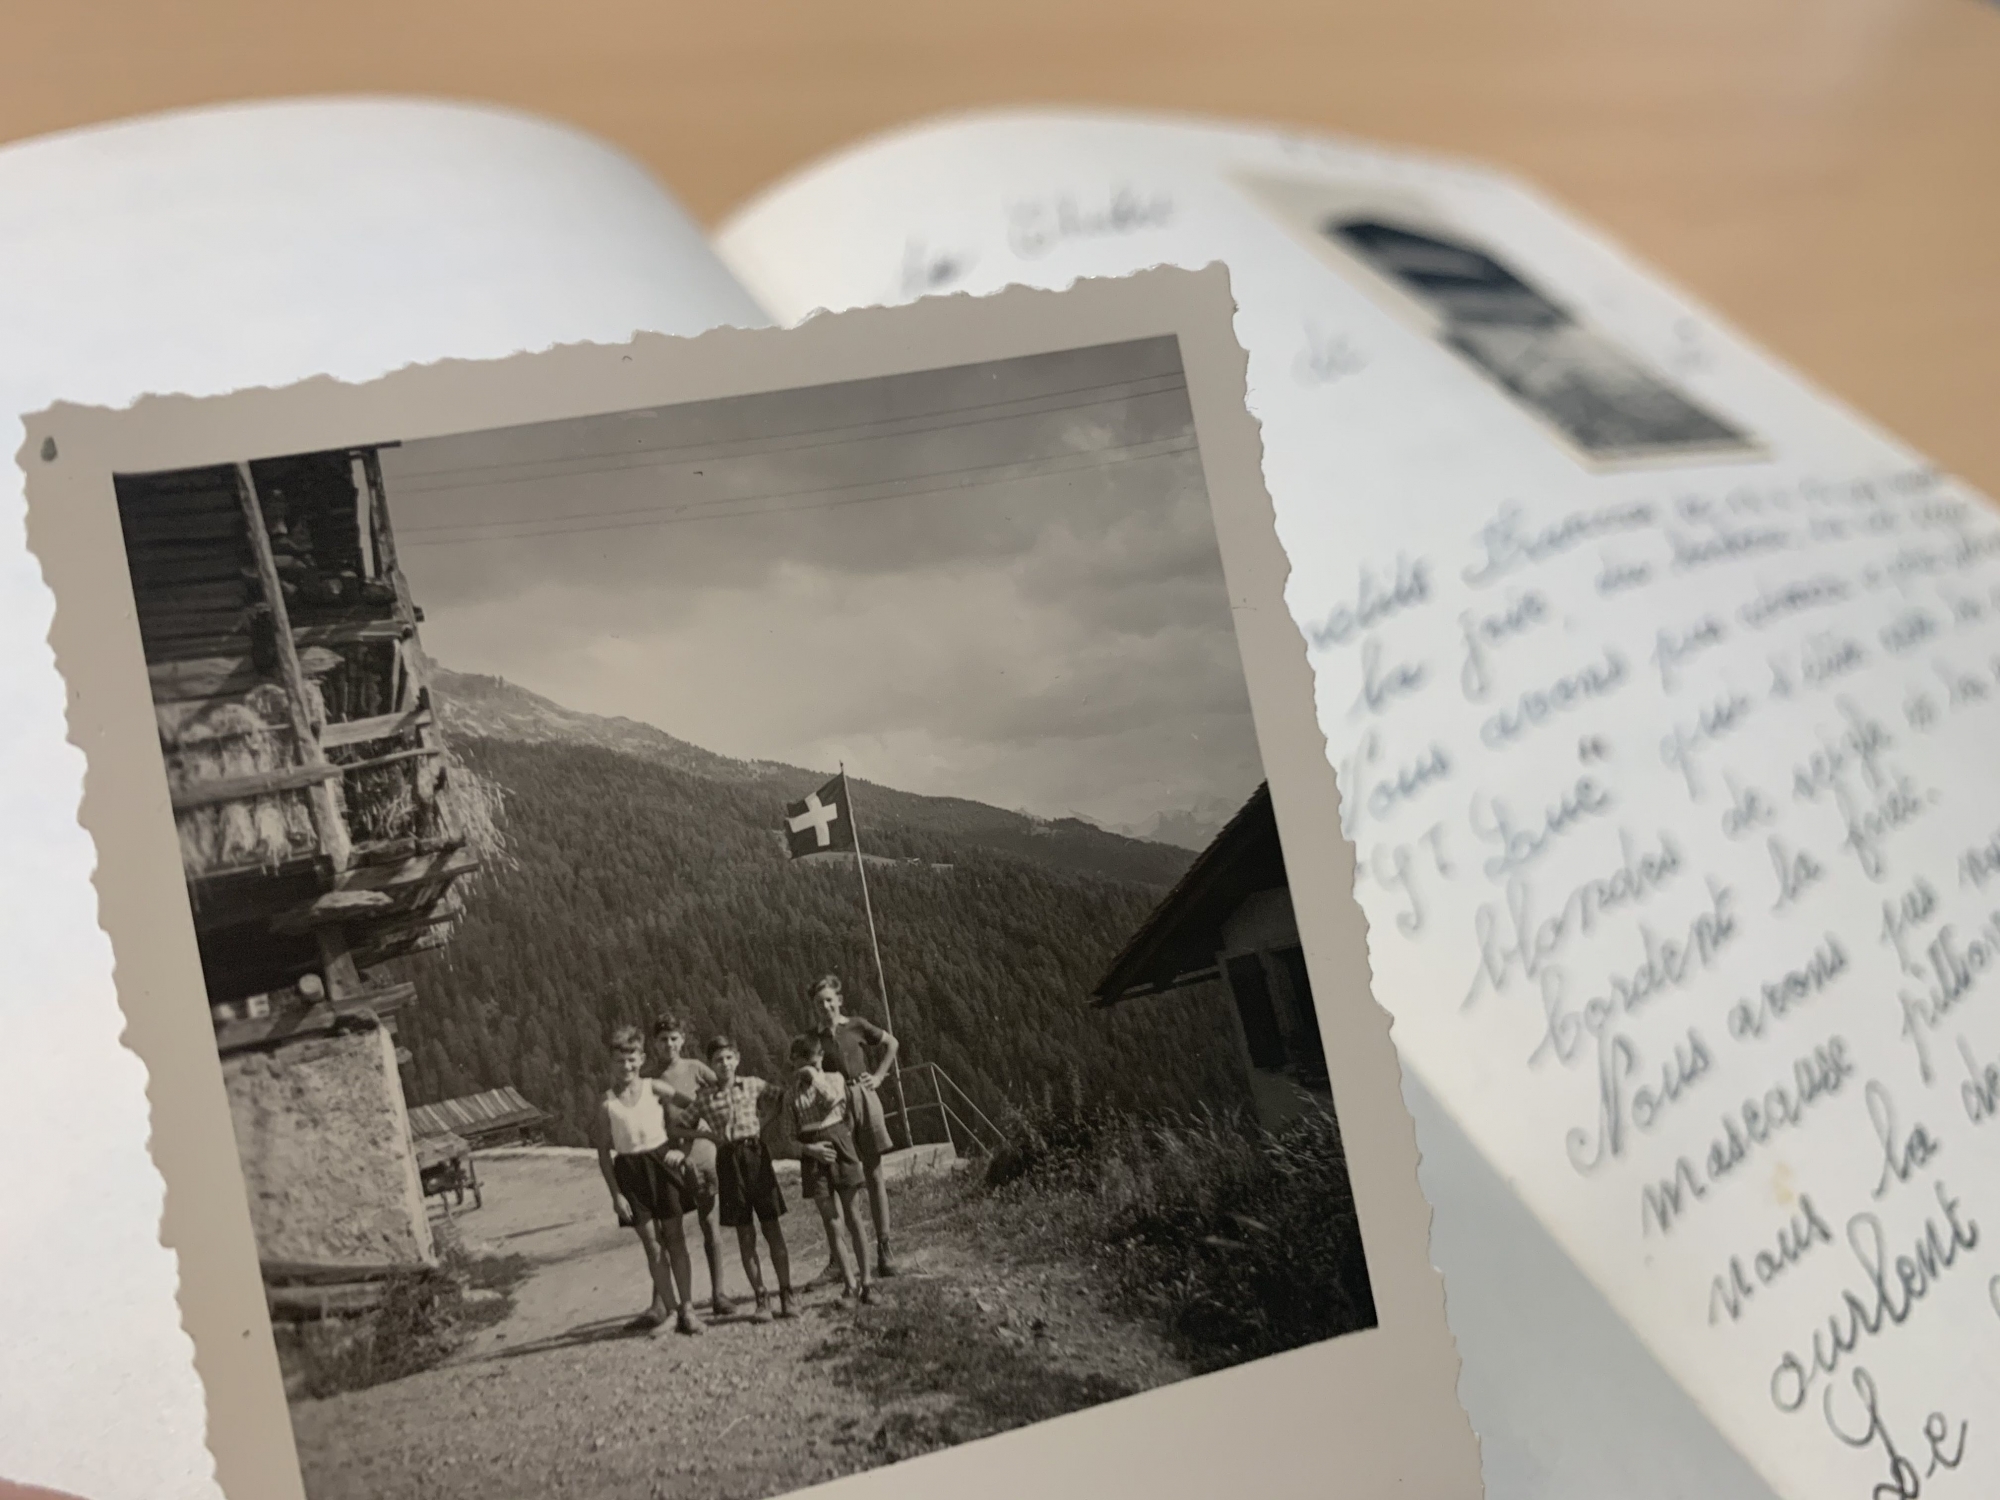 Conservé aux Archives de l’Etat du Valais à Sion, ce livre d’or témoigne du passage des réfugiés en Valais pendant la Deuxième Guerre mondiale.